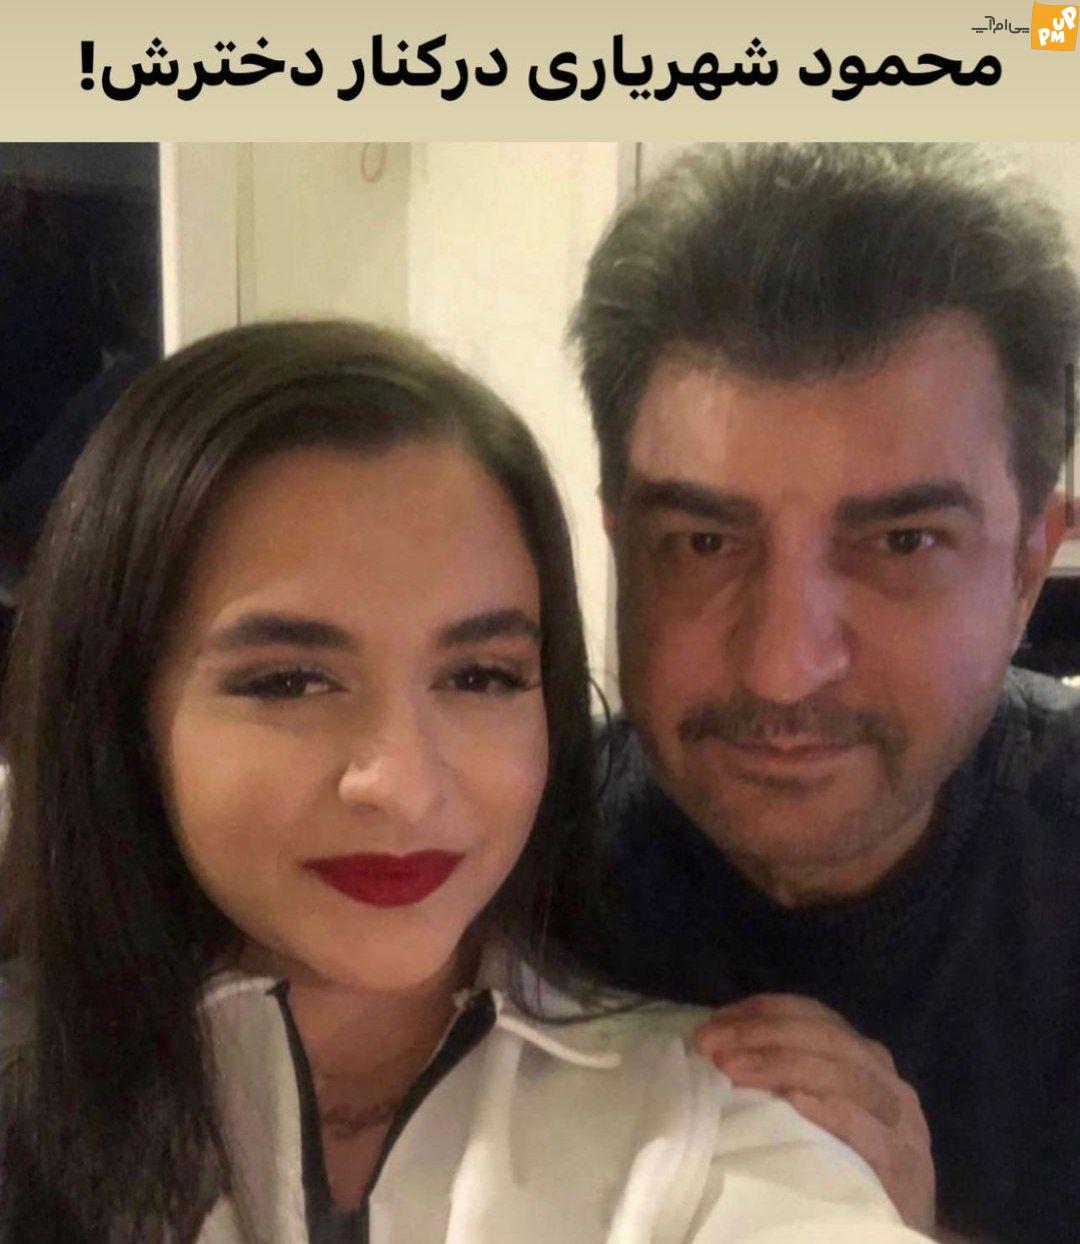 محمود شهریاری حجاب دخترش را برمی دارد